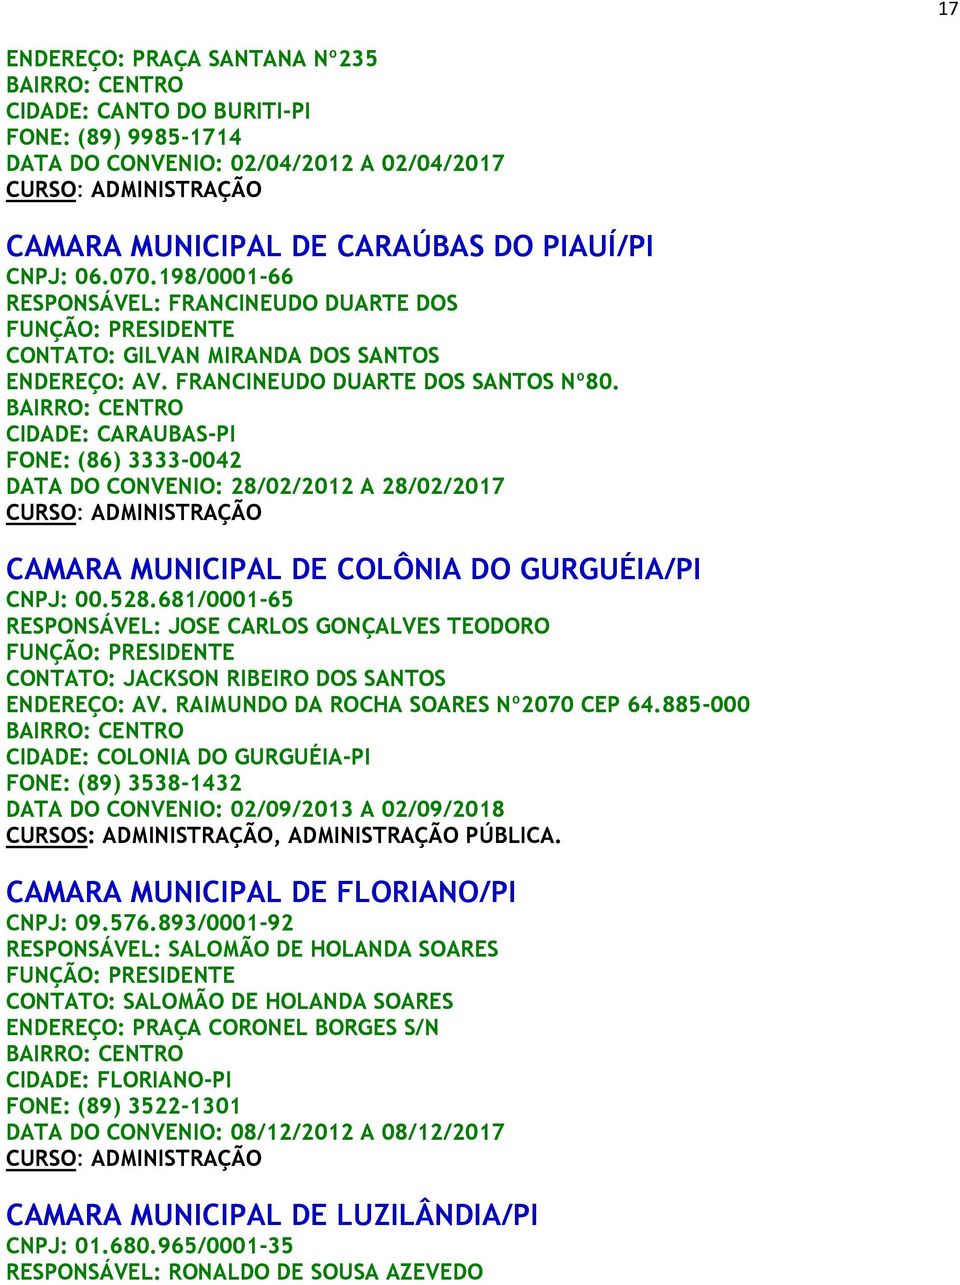 CIDADE: CARAUBAS-PI FONE: (86) 3333-0042 DATA DO CONVENIO: 28/02/2012 A 28/02/2017 CAMARA MUNICIPAL DE COLÔNIA DO GURGUÉIA/PI CNPJ: 00.528.